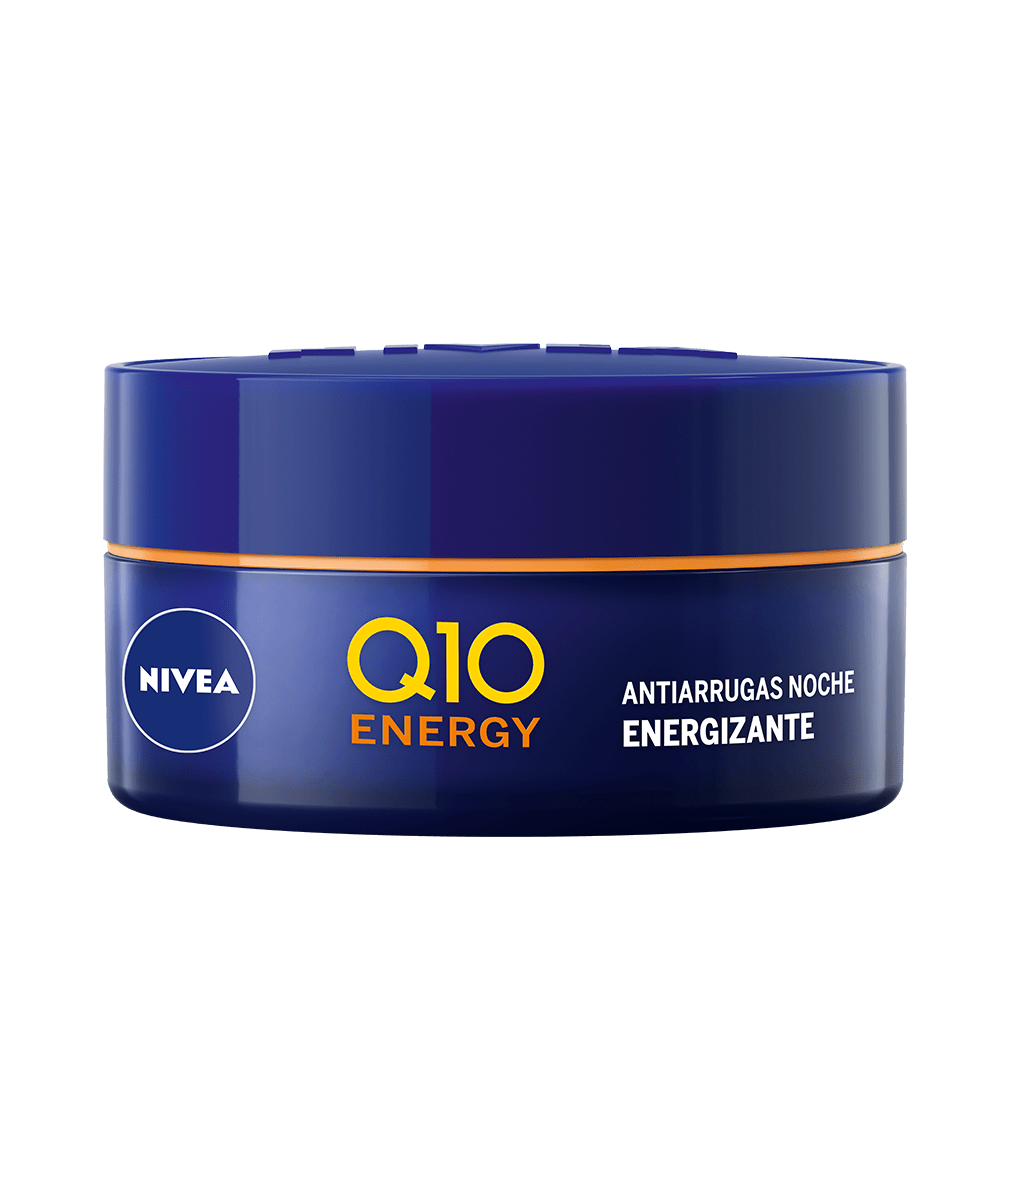 NIVEA Q10 Energy Antiarrugas Crema de Noche Energizante